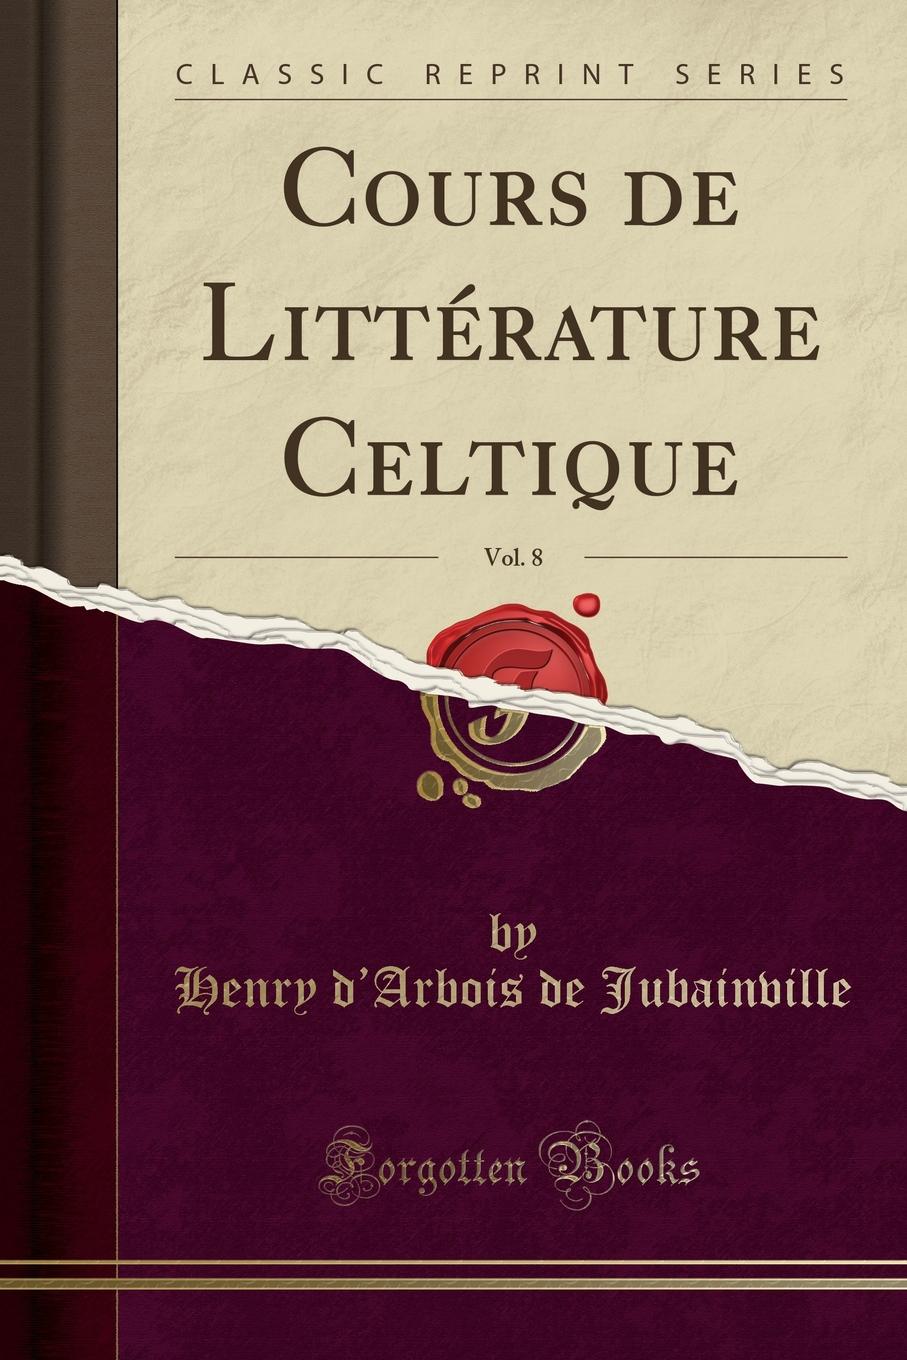 Henry d'Arbois de Jubainville Cours de Litterature Celtique, Vol. 8 (Classic Reprint)